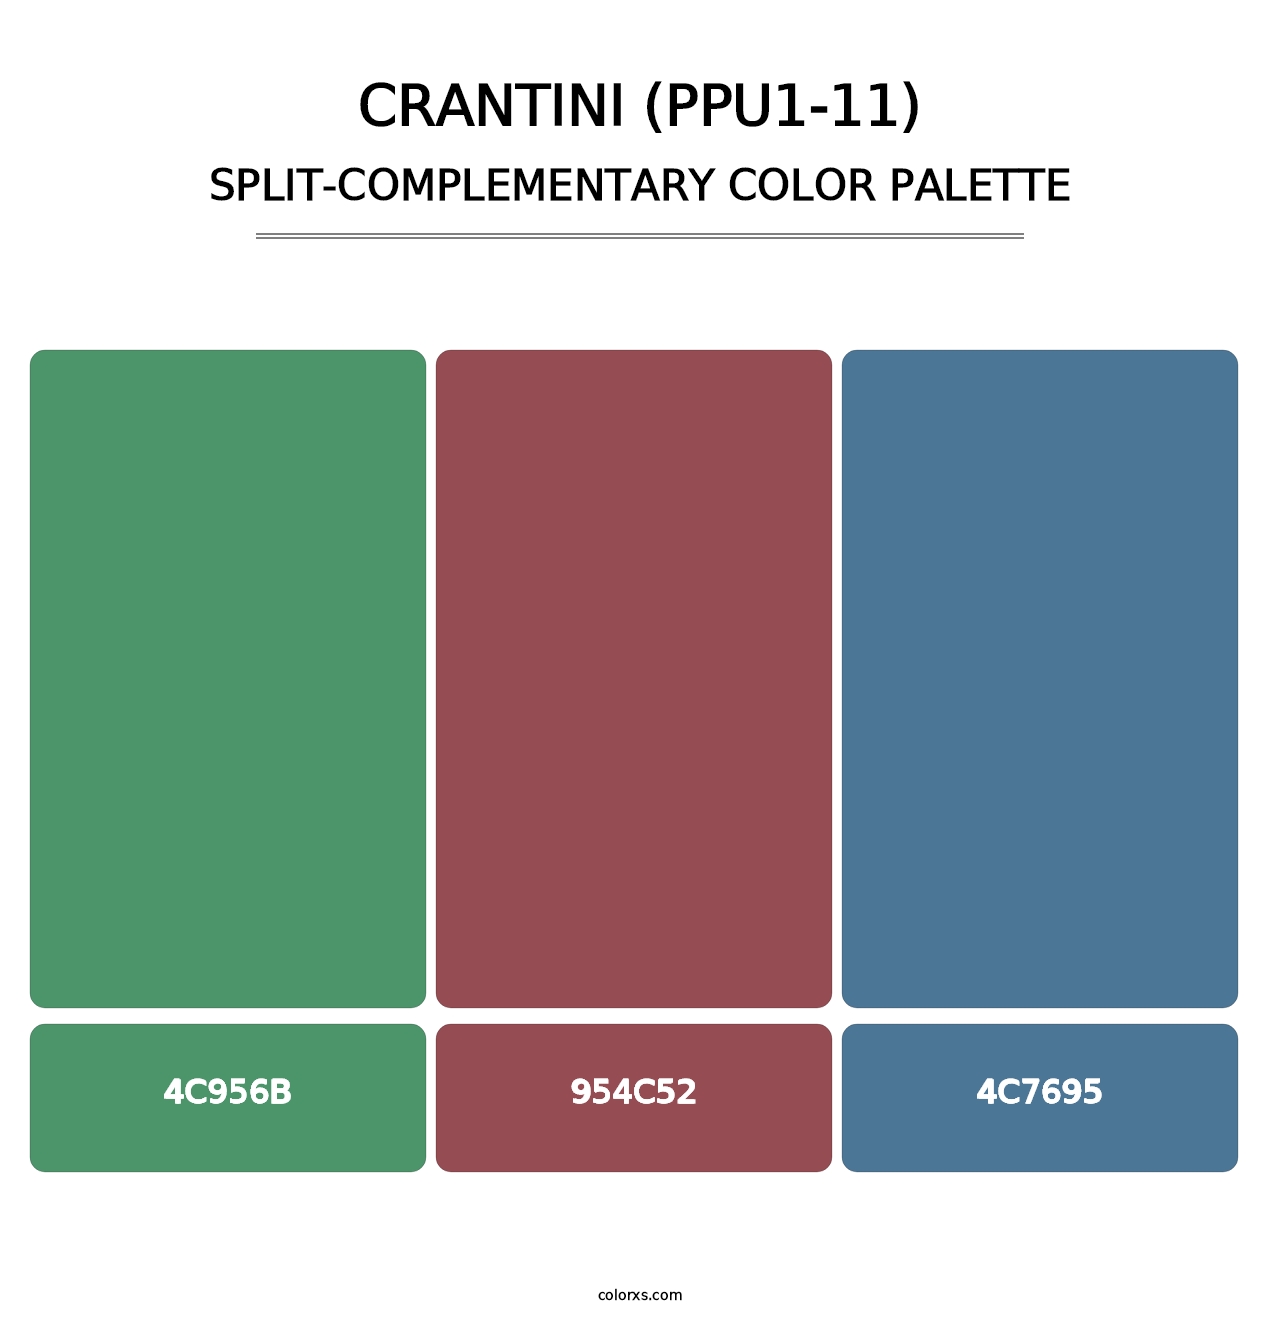 Crantini (PPU1-11) - Split-Complementary Color Palette